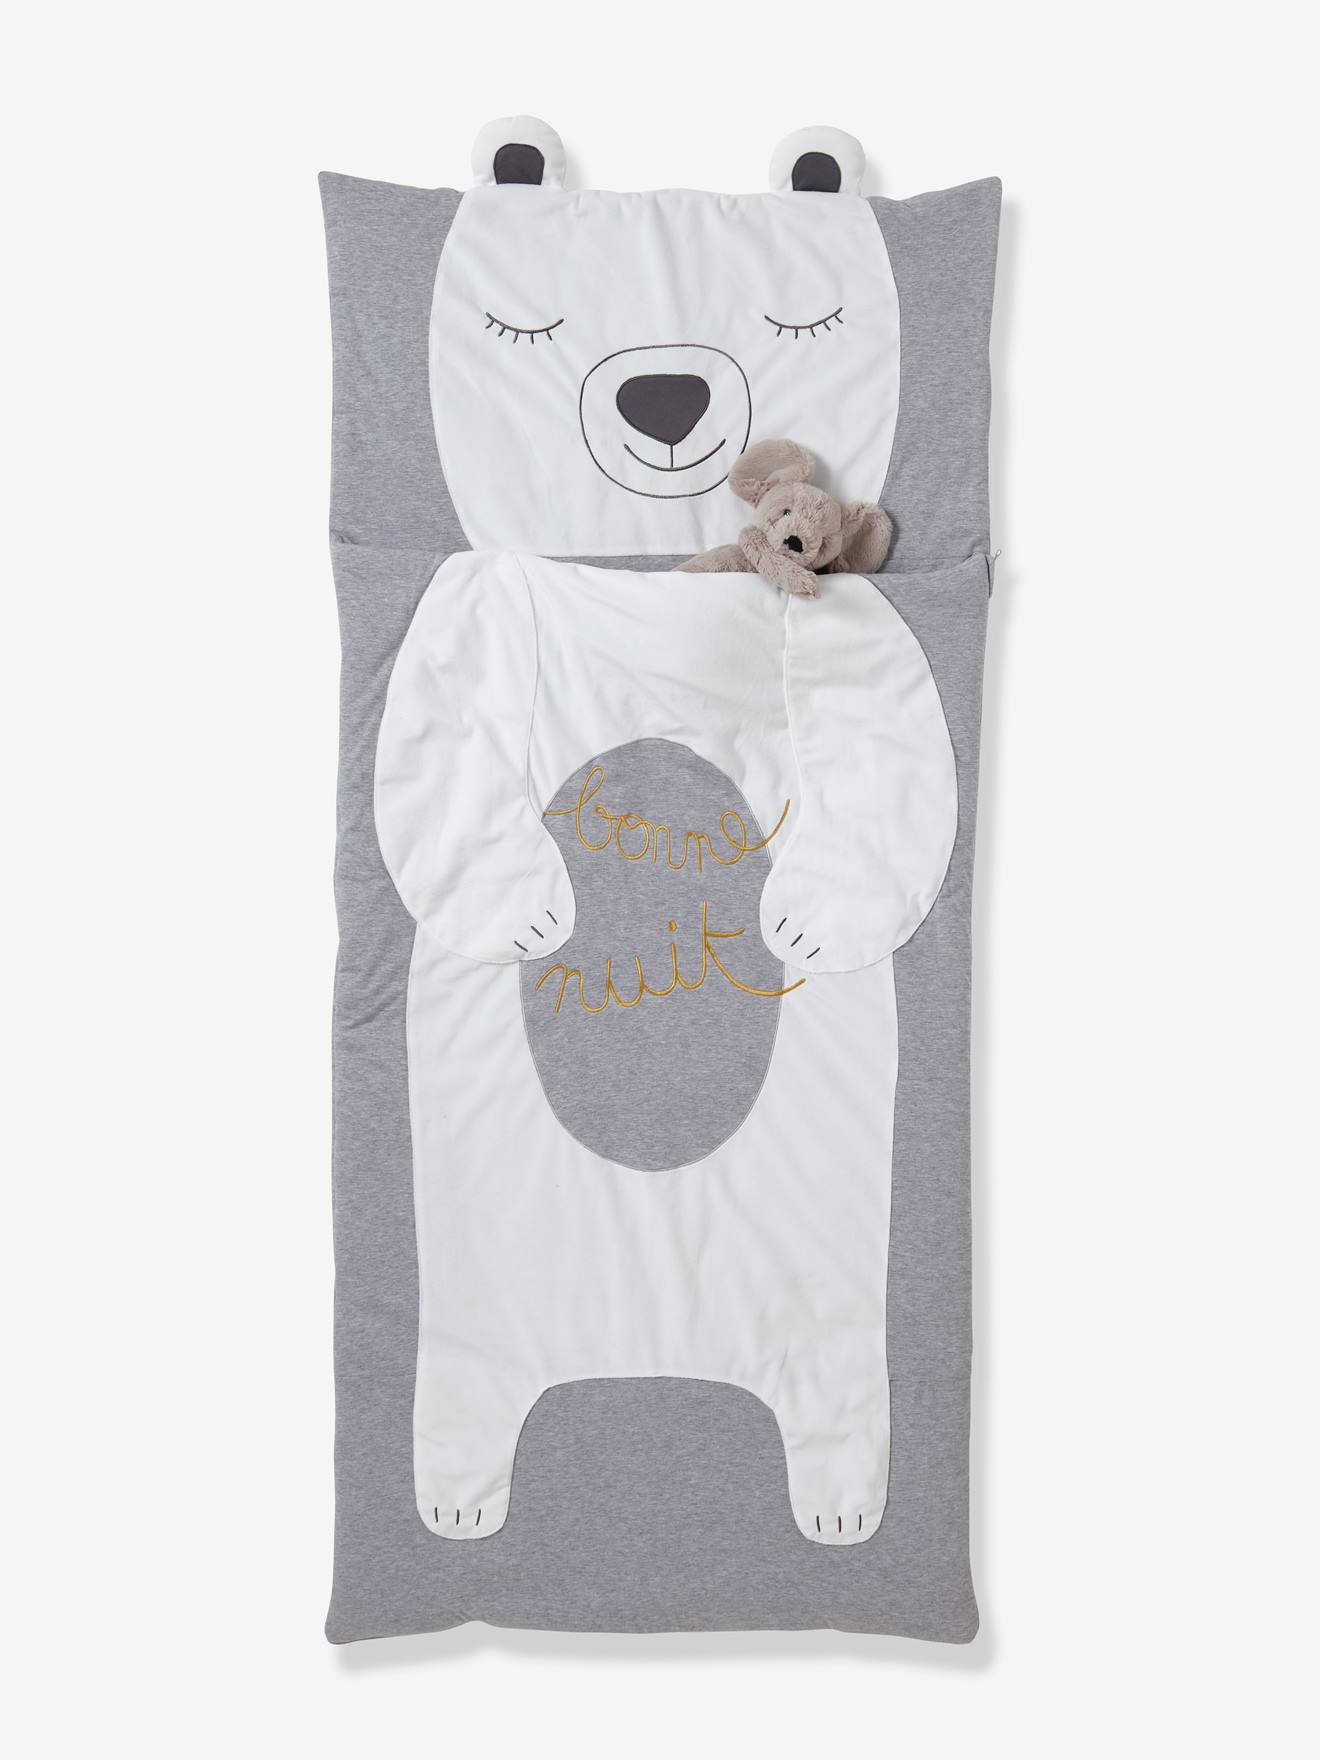 teddy bear sleeping bag and bed